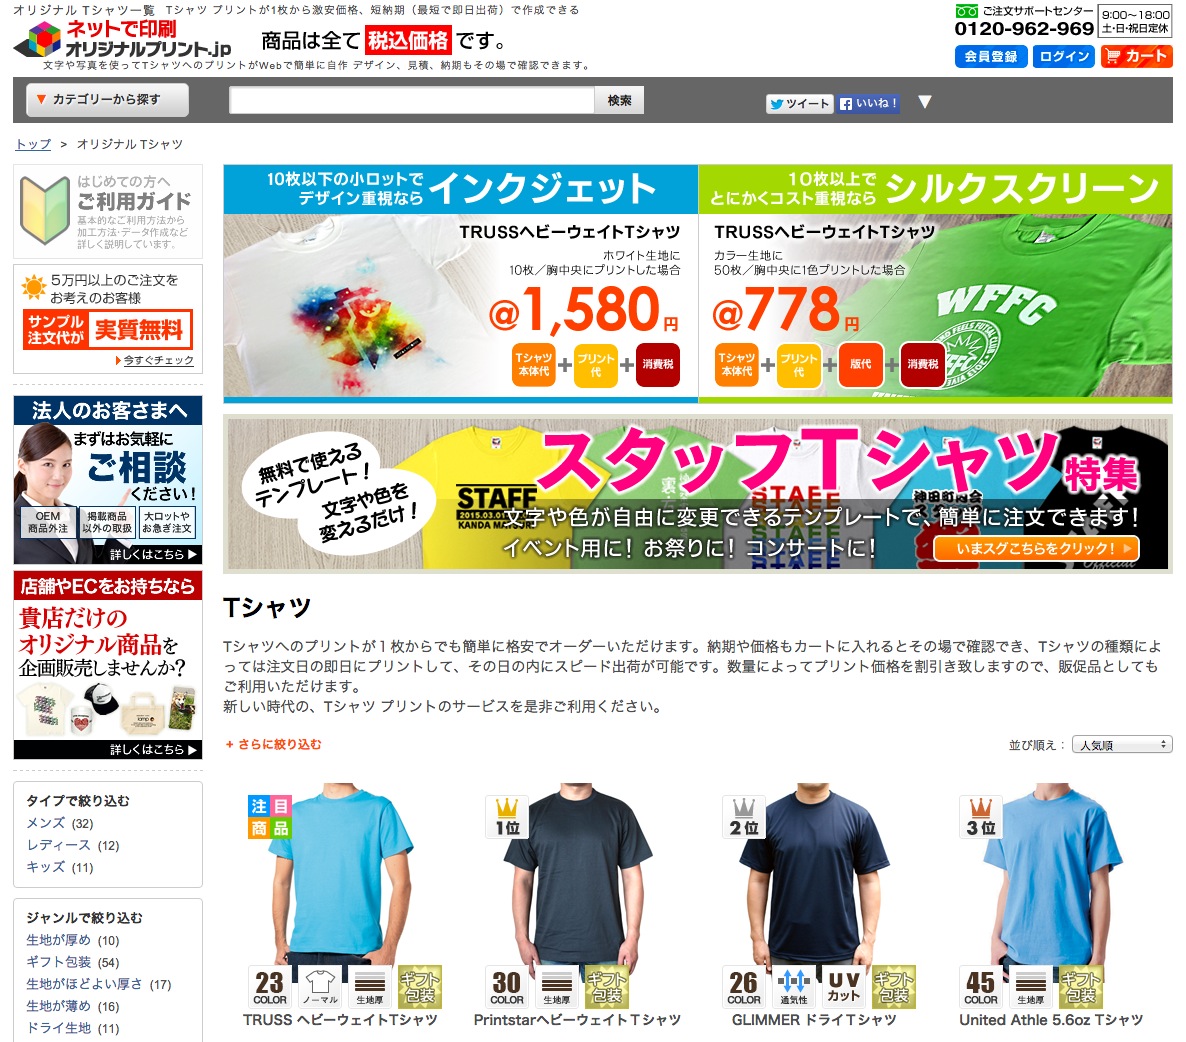 激安のオリジナルTシャツ作成サービス「オリジナルプリント.jp」